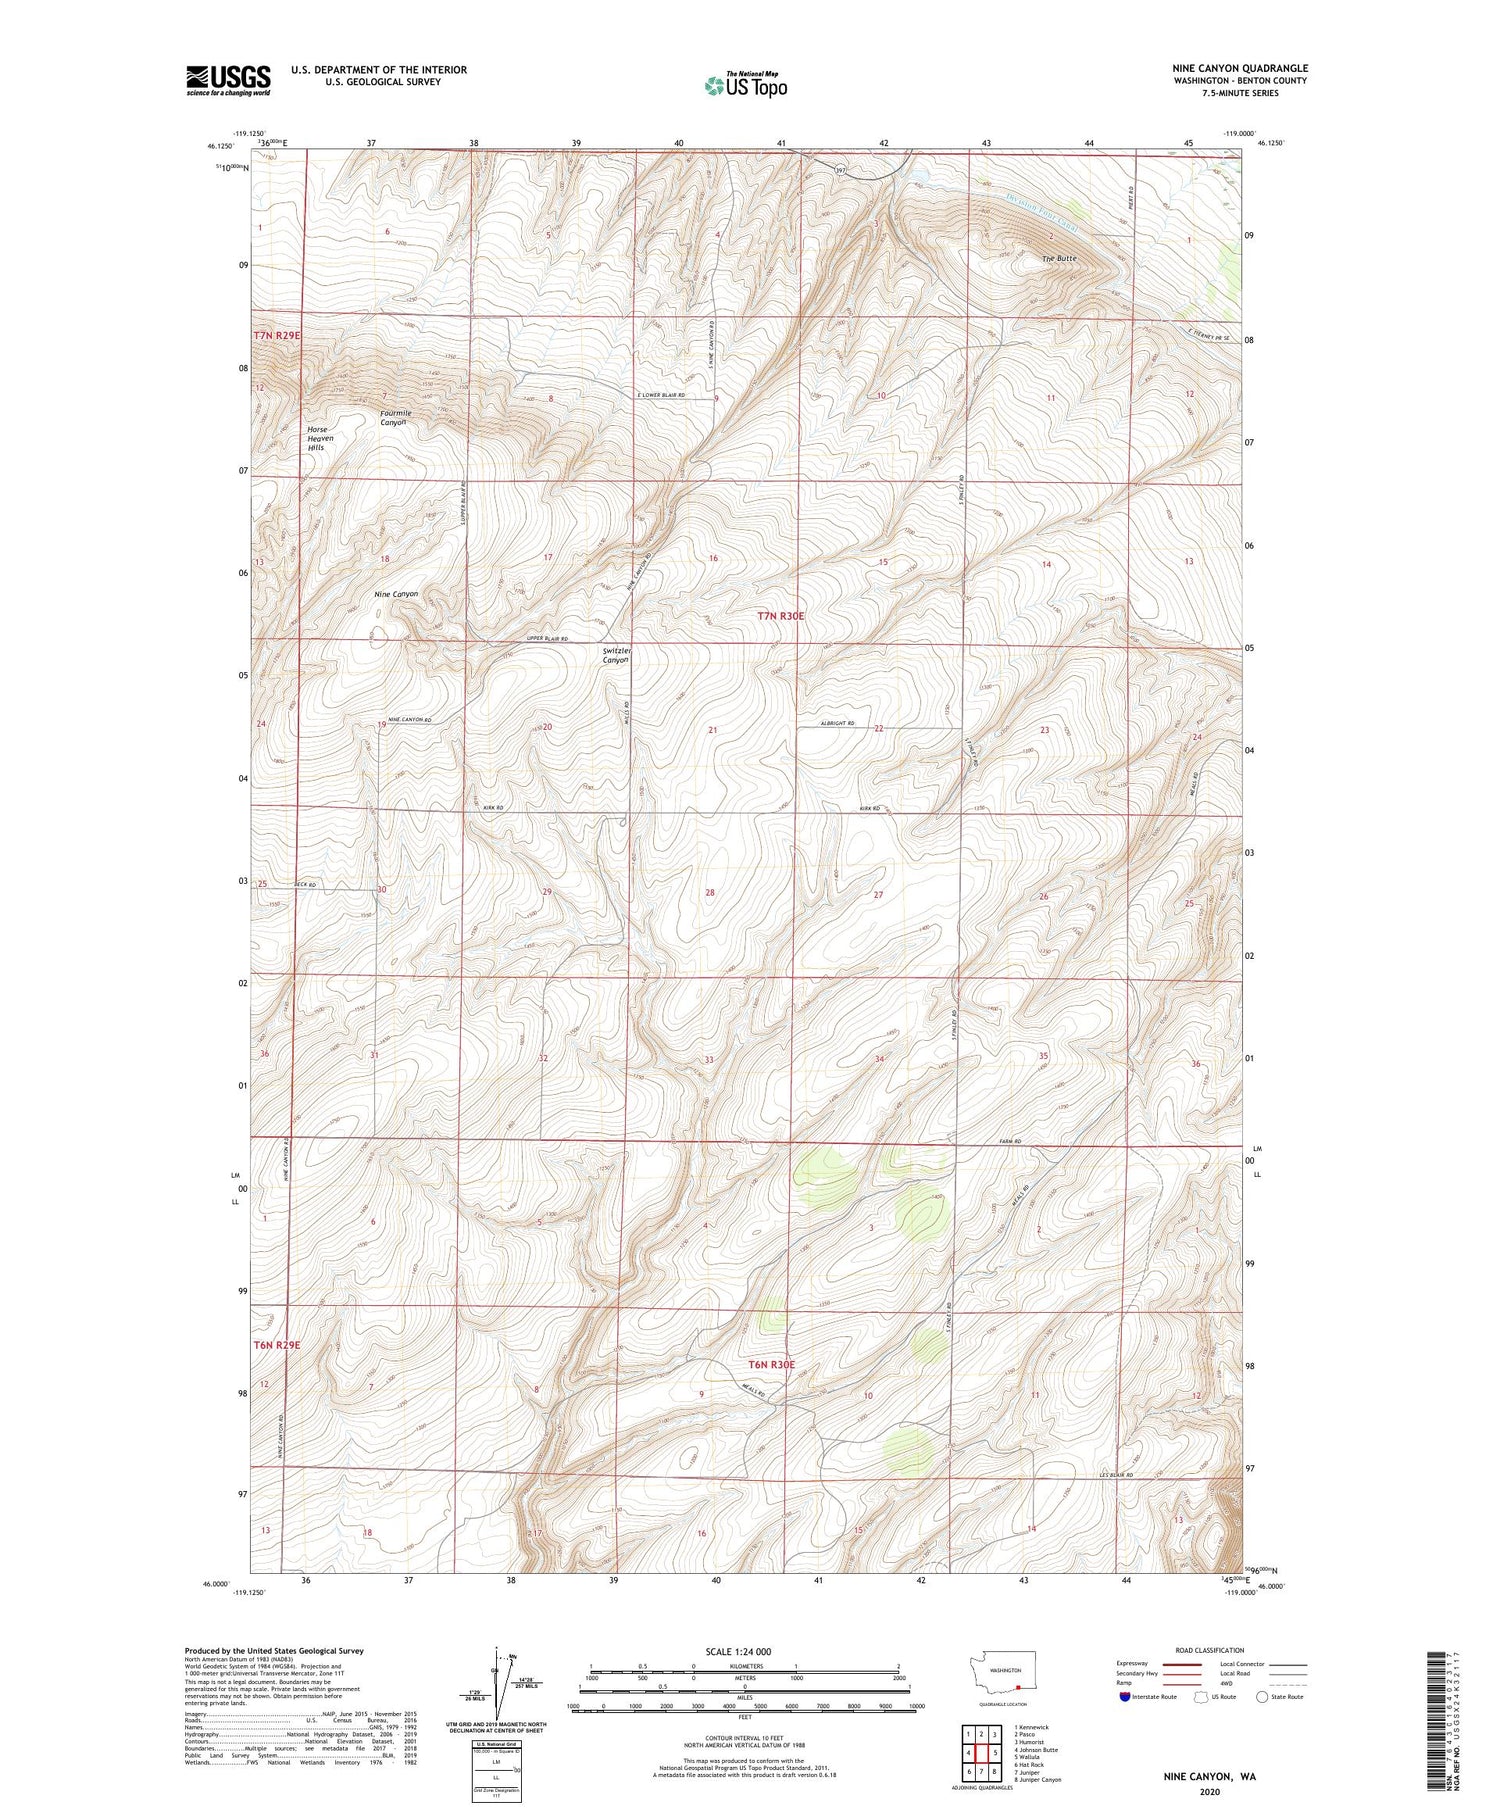 Nine Canyon Washington US Topo Map Image